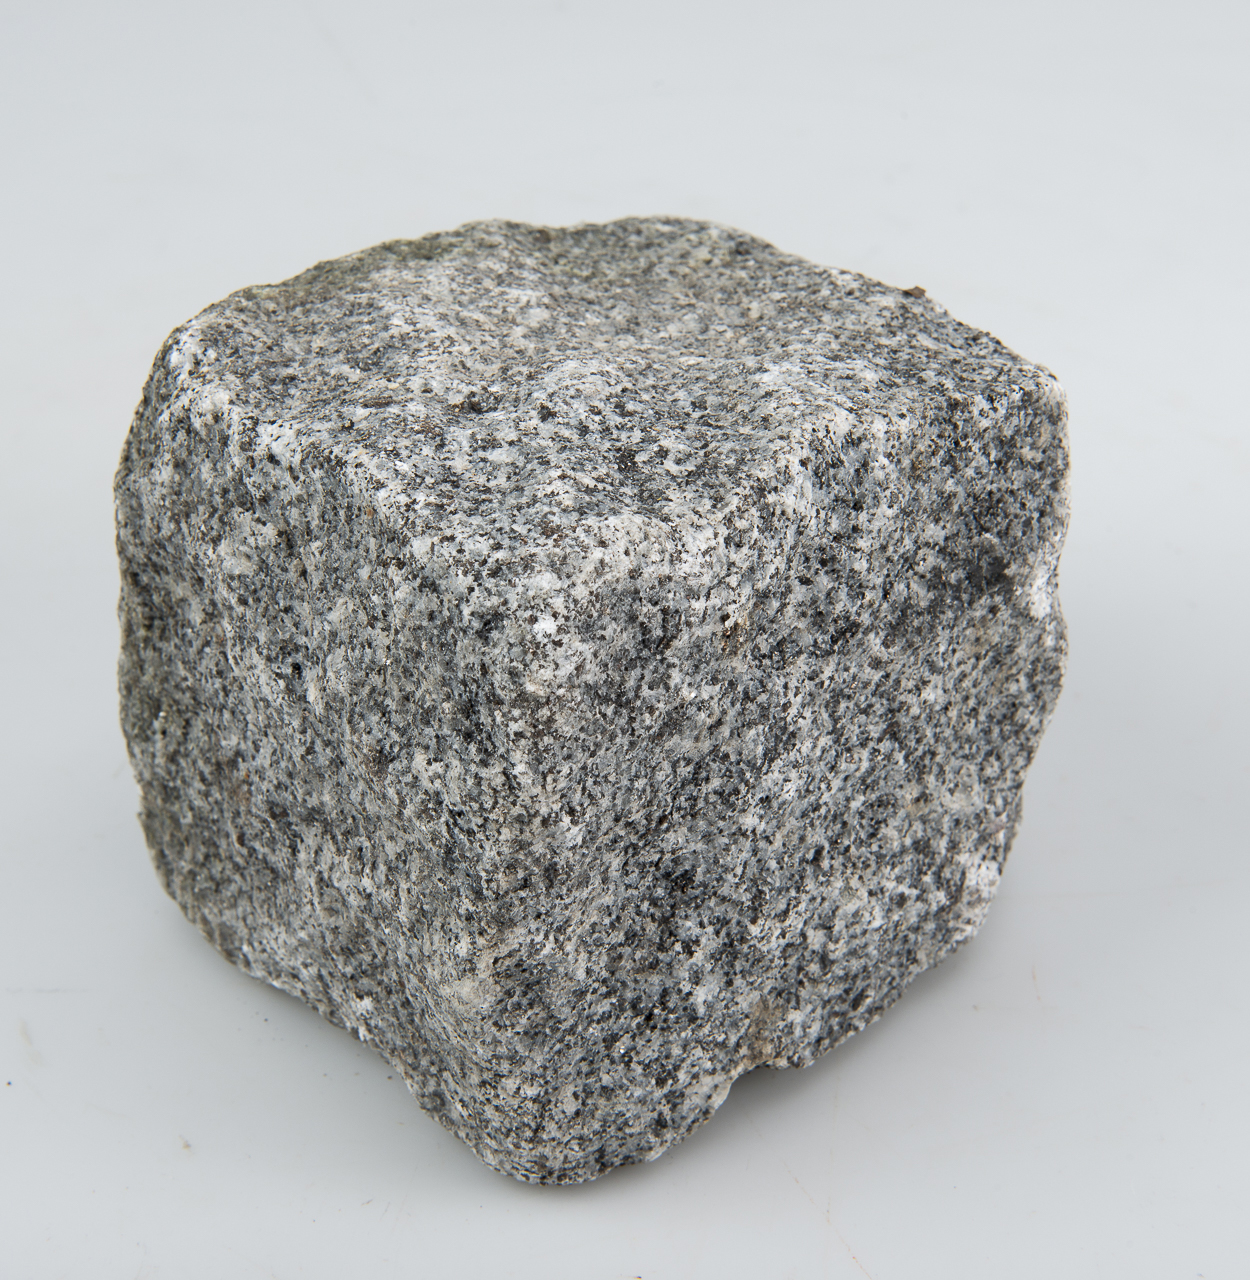 En ganska grovt huggen gatsten av granit. Stenen är nästan kubisk. Den är grå i flera nyanser.